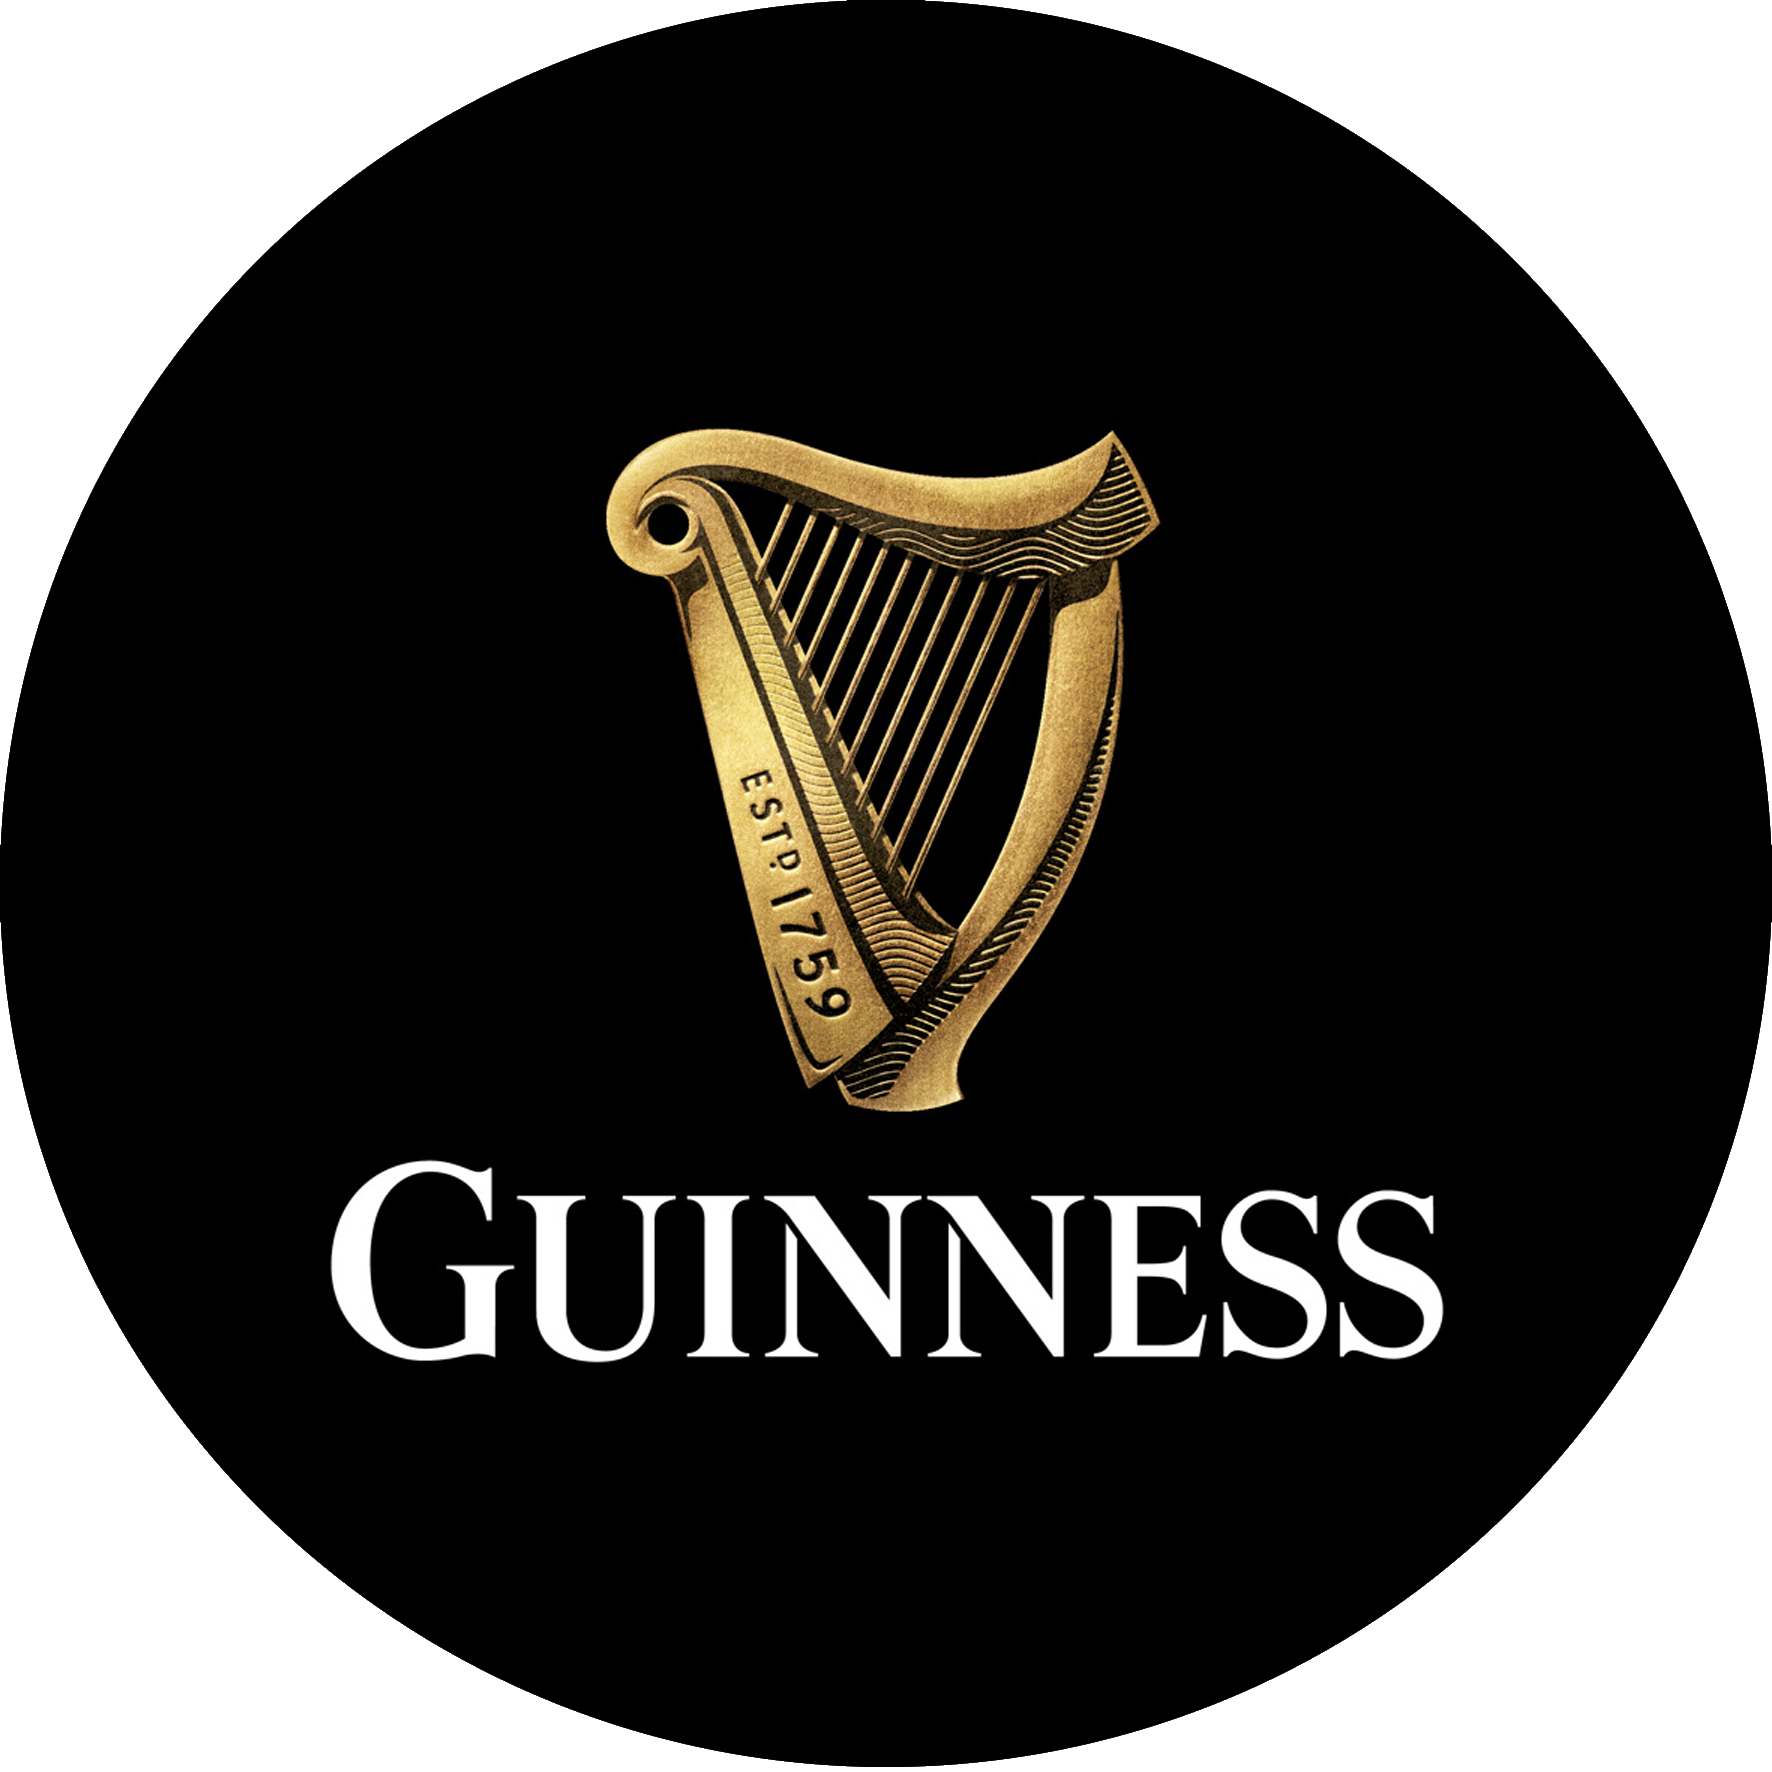 Guinness / 4.2%